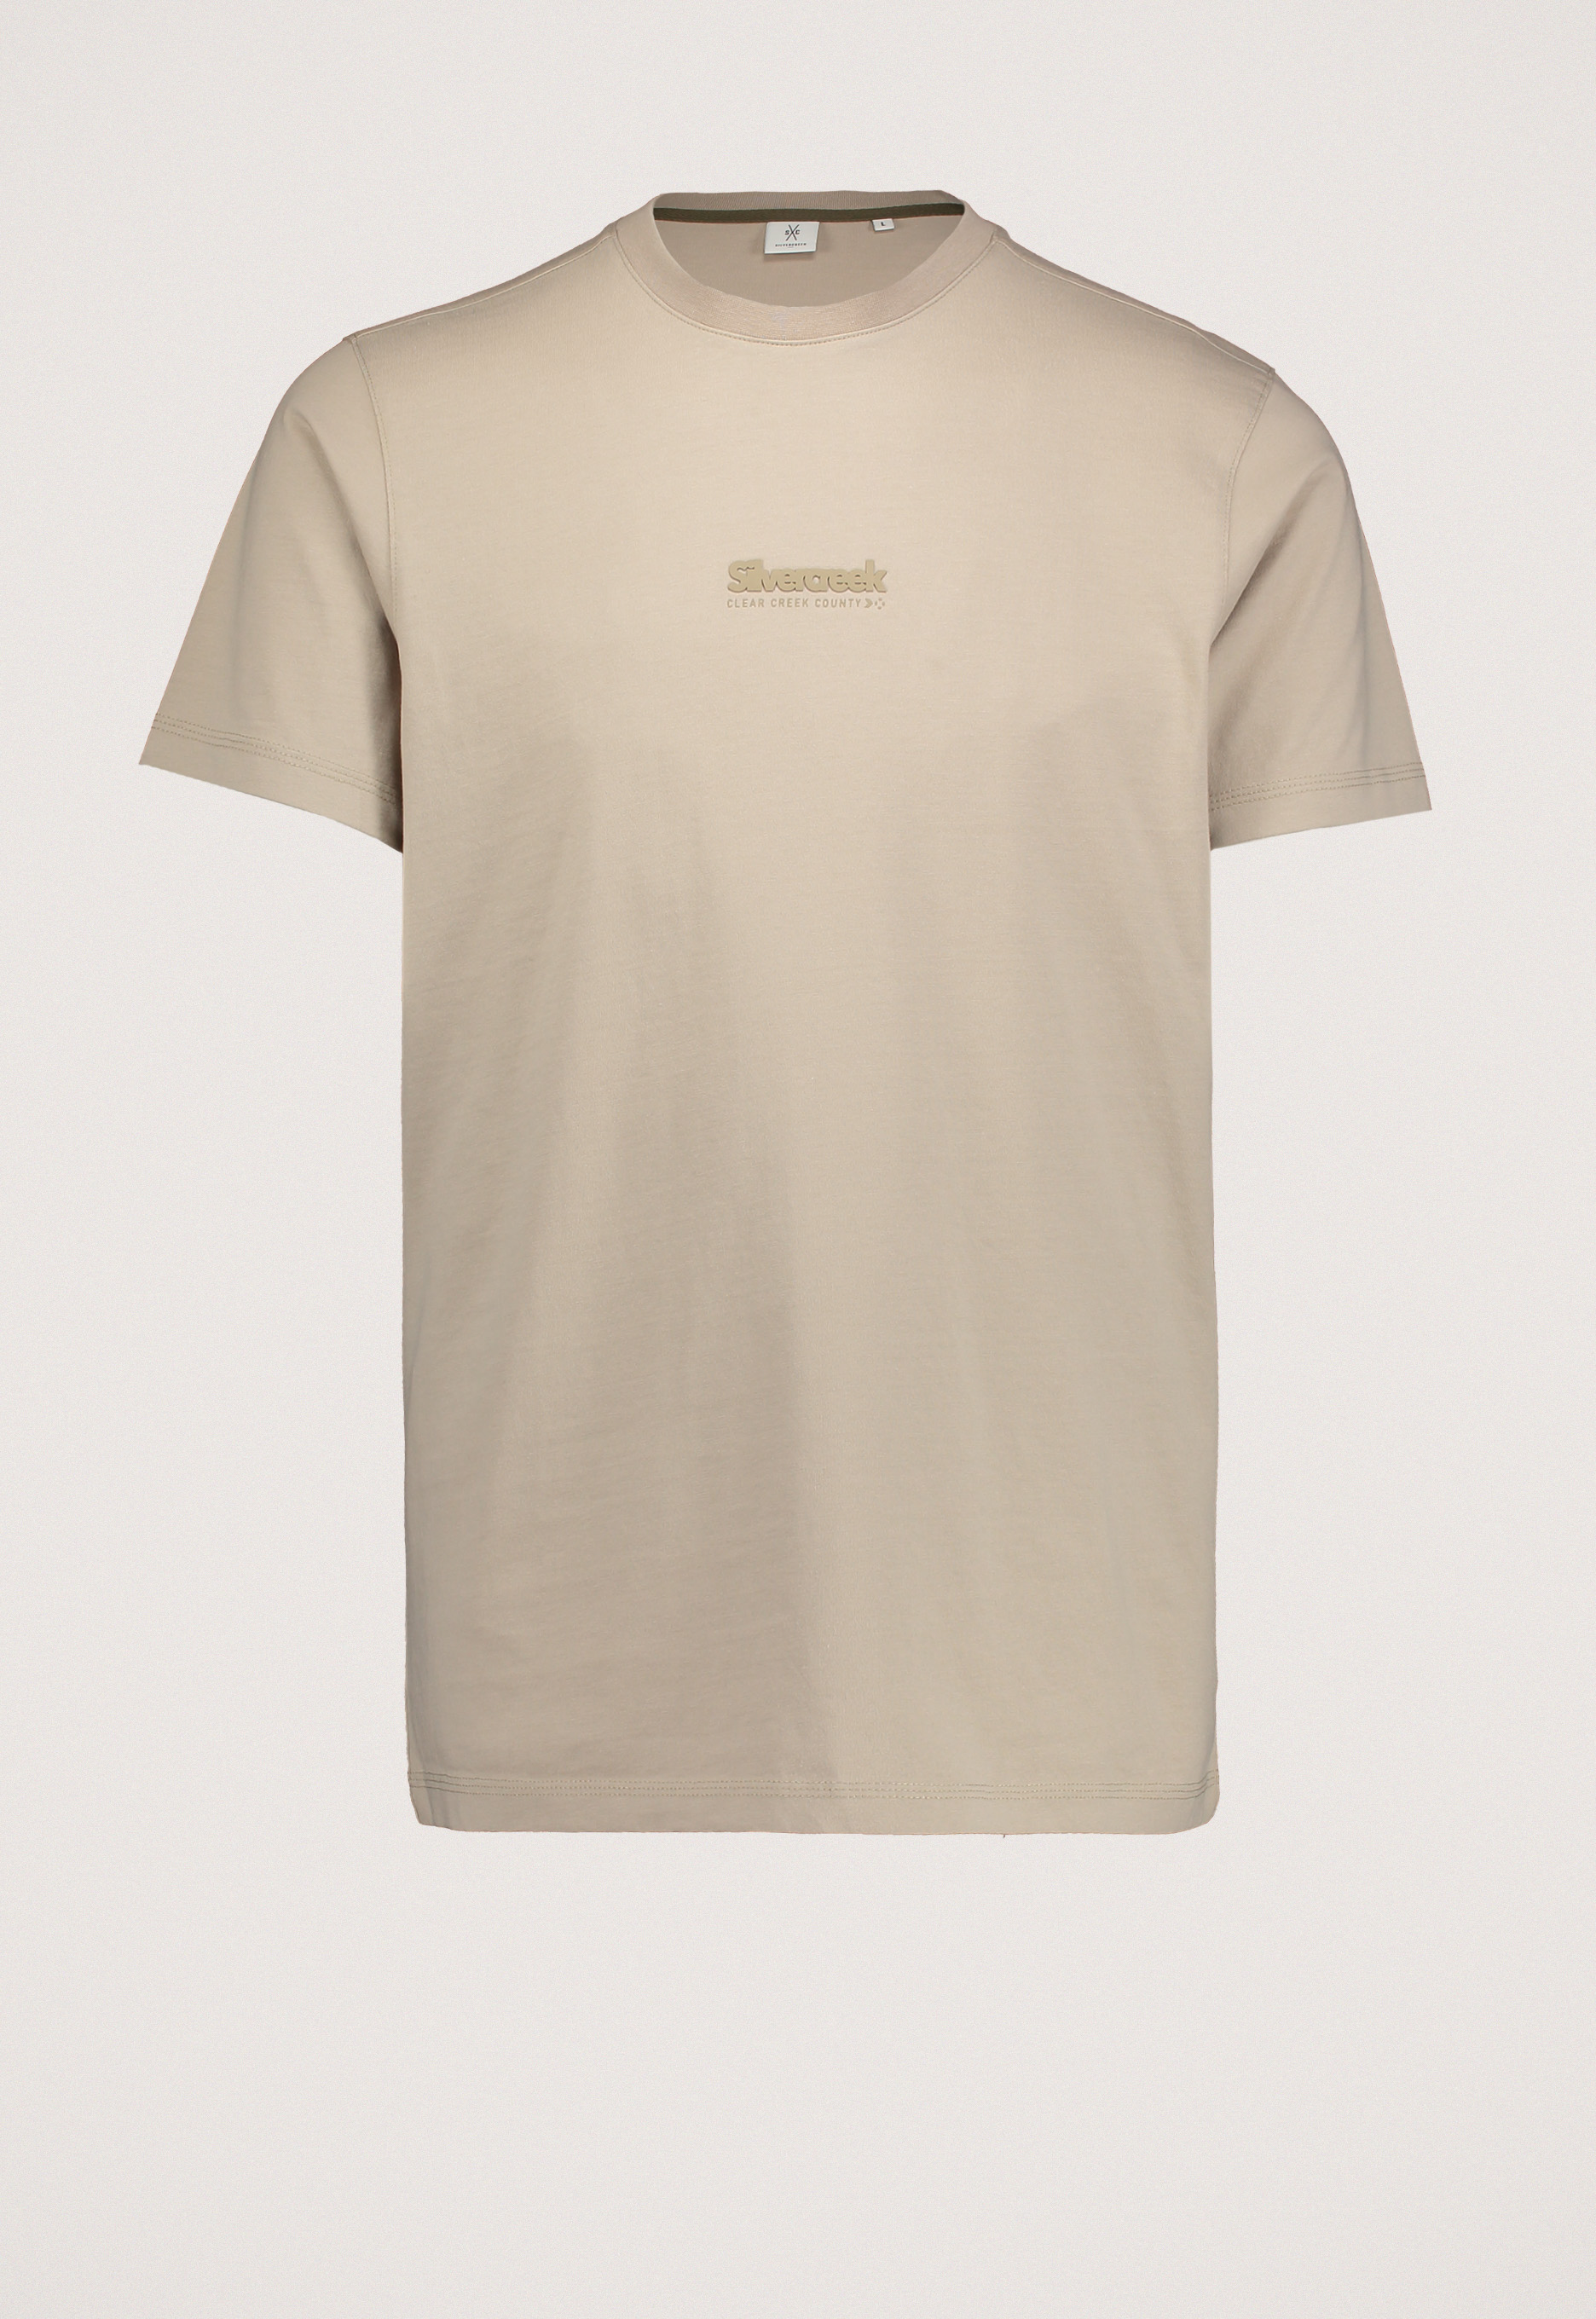 Silvercreek Fraser T-shirt